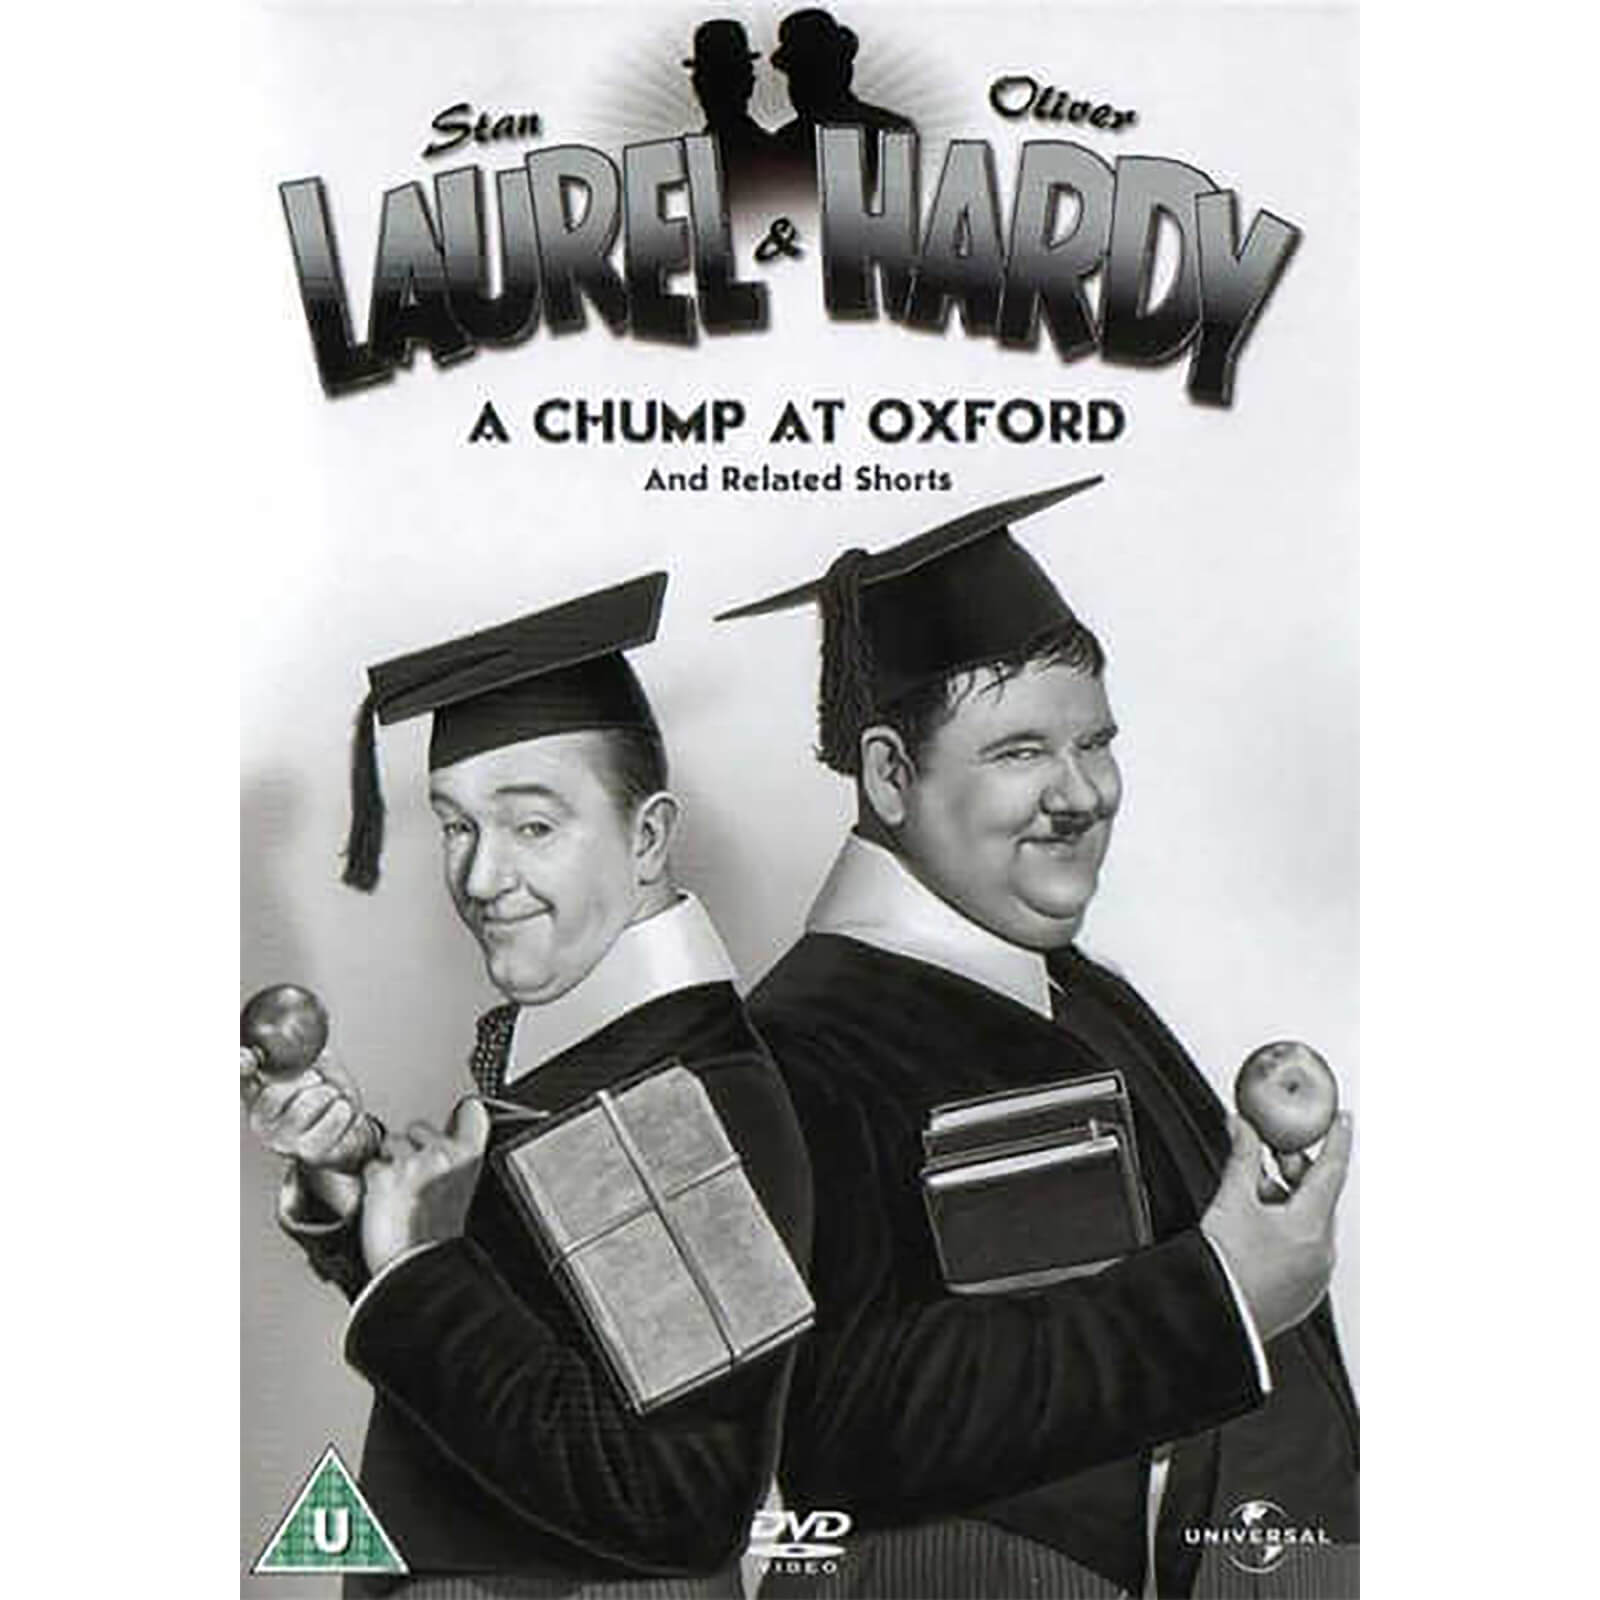 Laurel & Hardy in Oxford und dazugehörige Kurzfilme von Universal Pictures